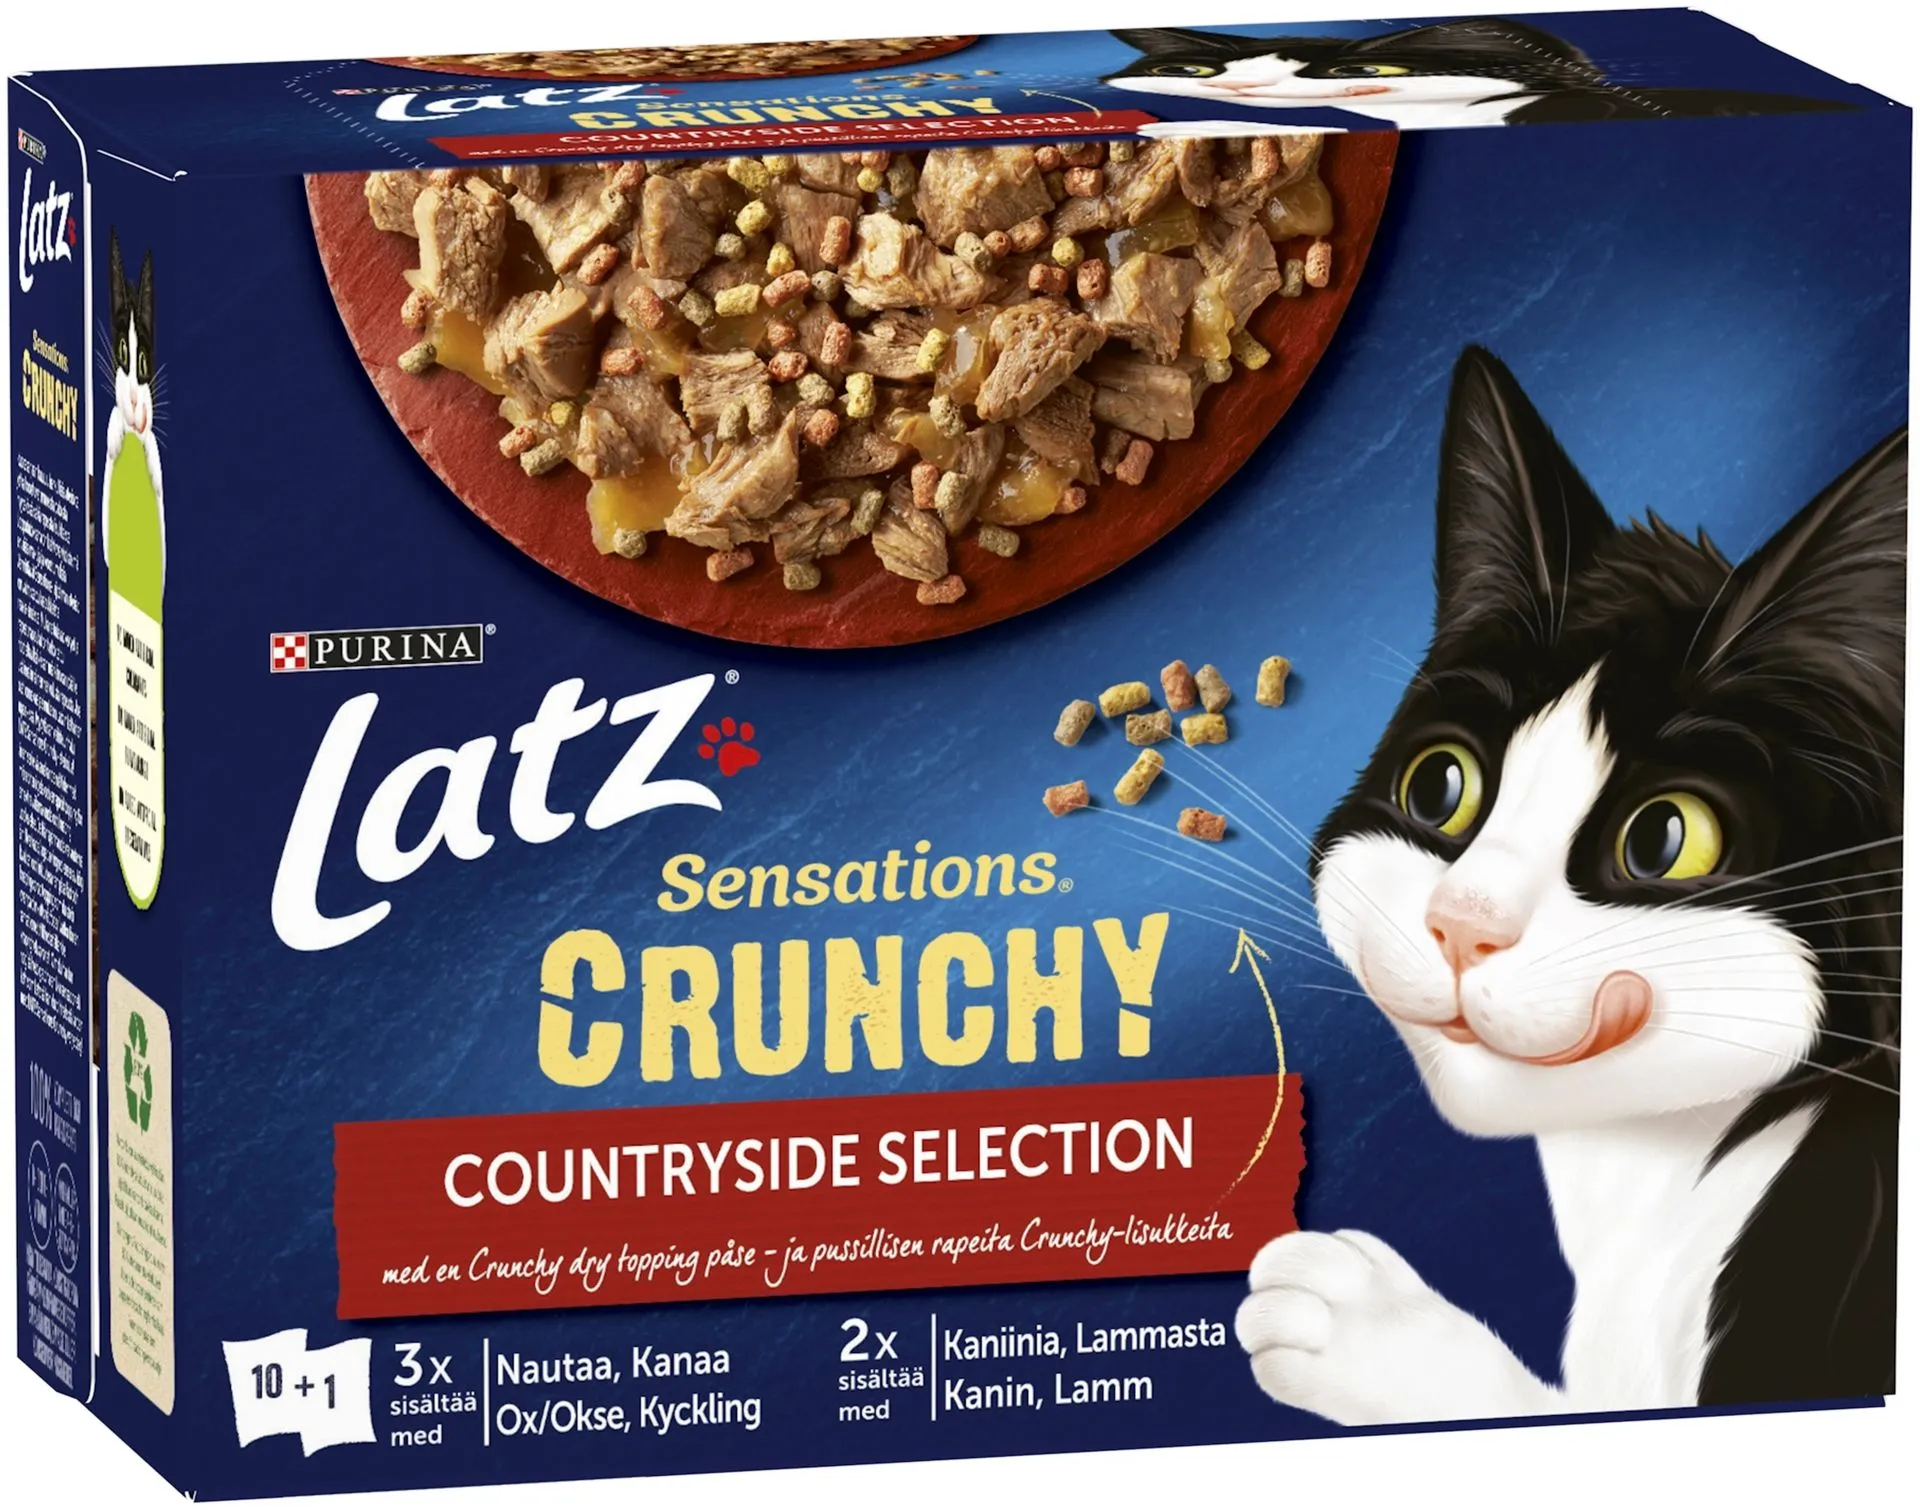 Latz Sensations Crunchy 10x85g+40g Countryside lajitelma hyytelössä 4 varianttia kissanruoka